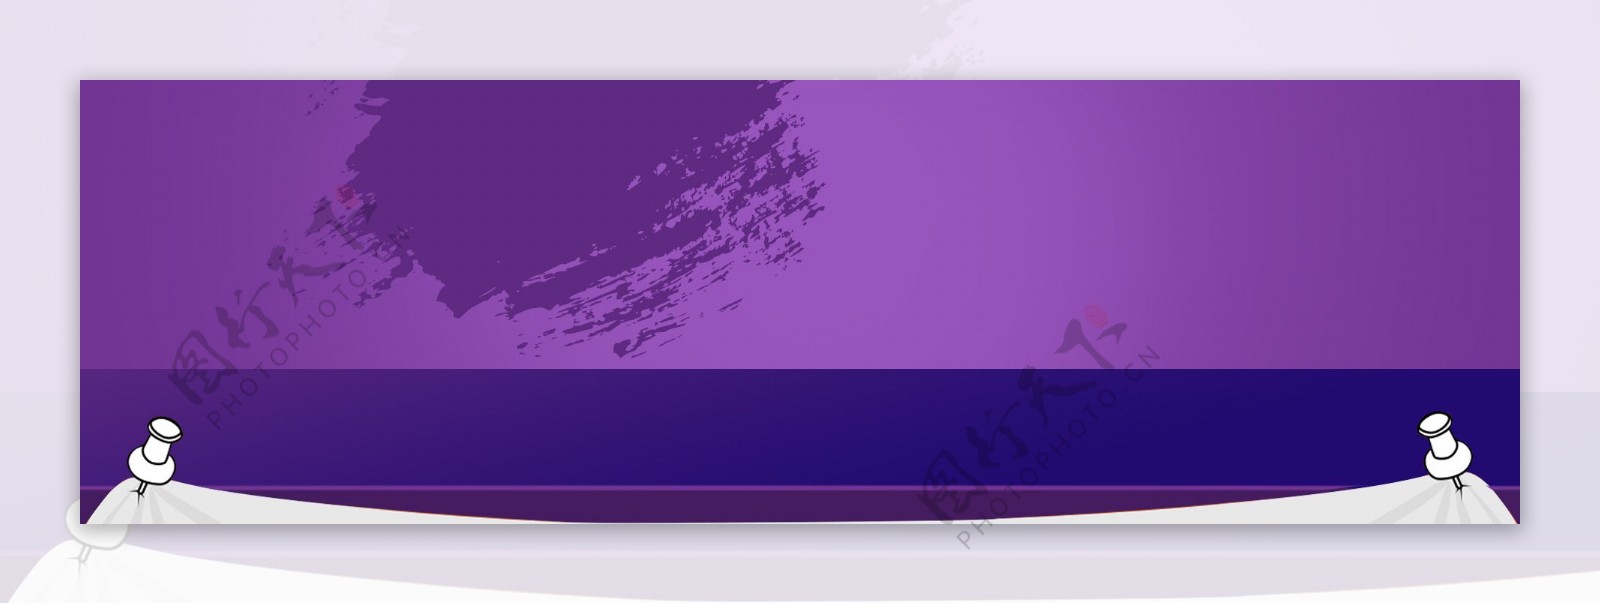 个性紫色背景图